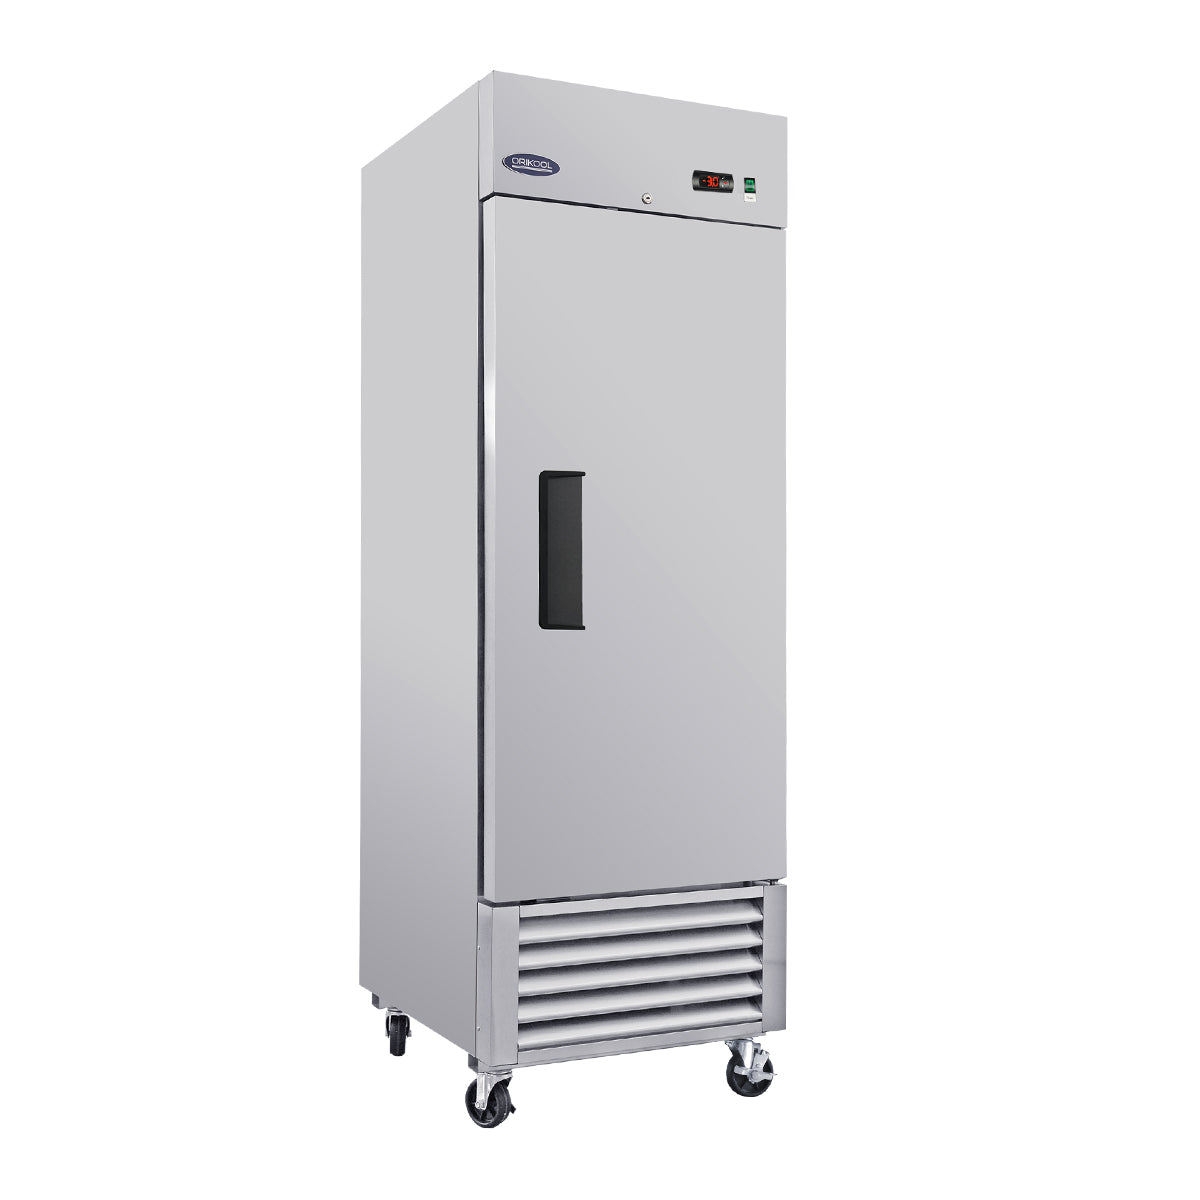 ORIKOOL 27"Solid Door Reach-In Commercial Freezer 23 cu.ft. ST27BF